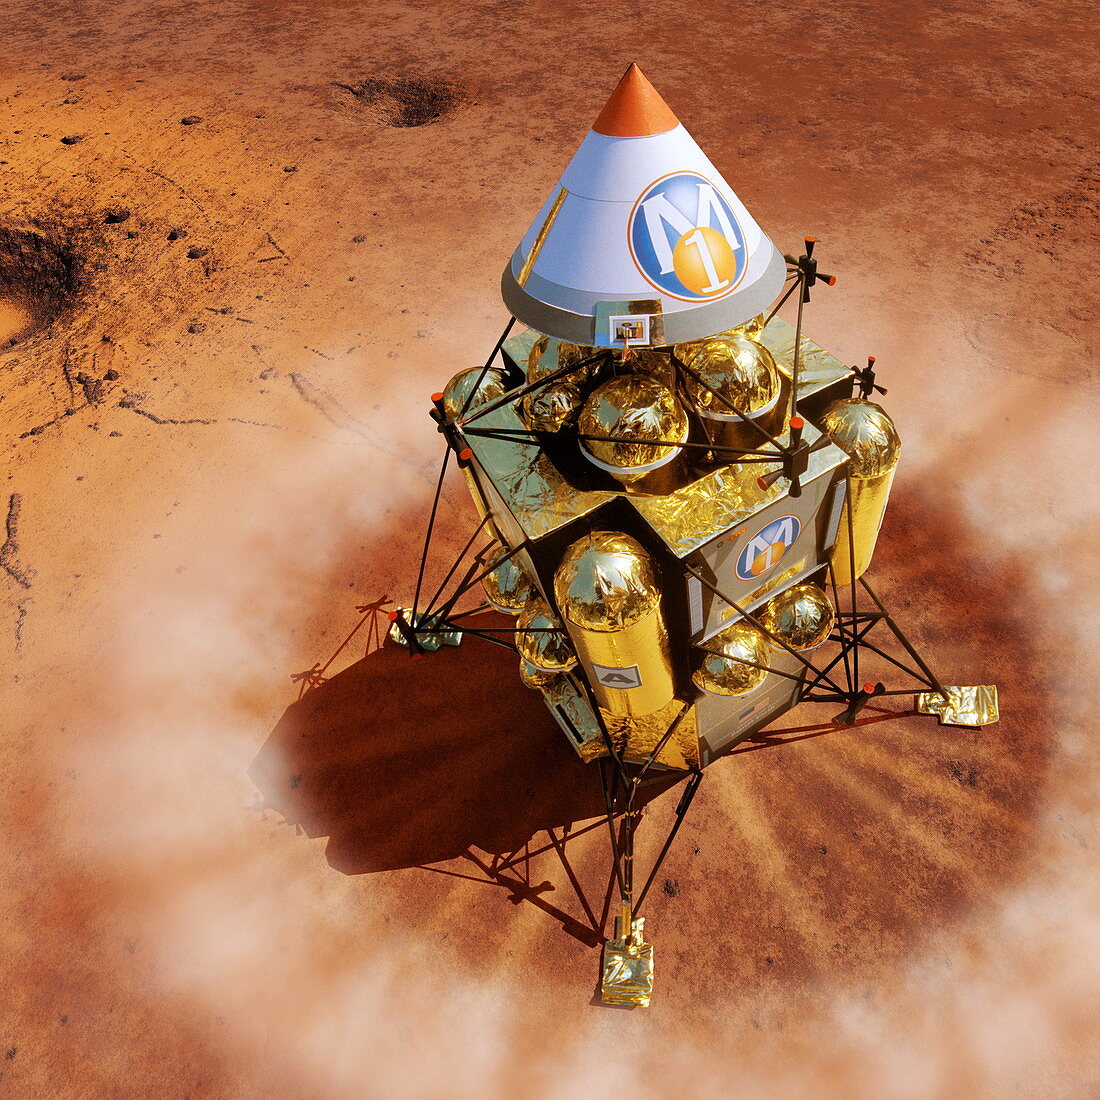 Spacecraft lands on Mars,artwork